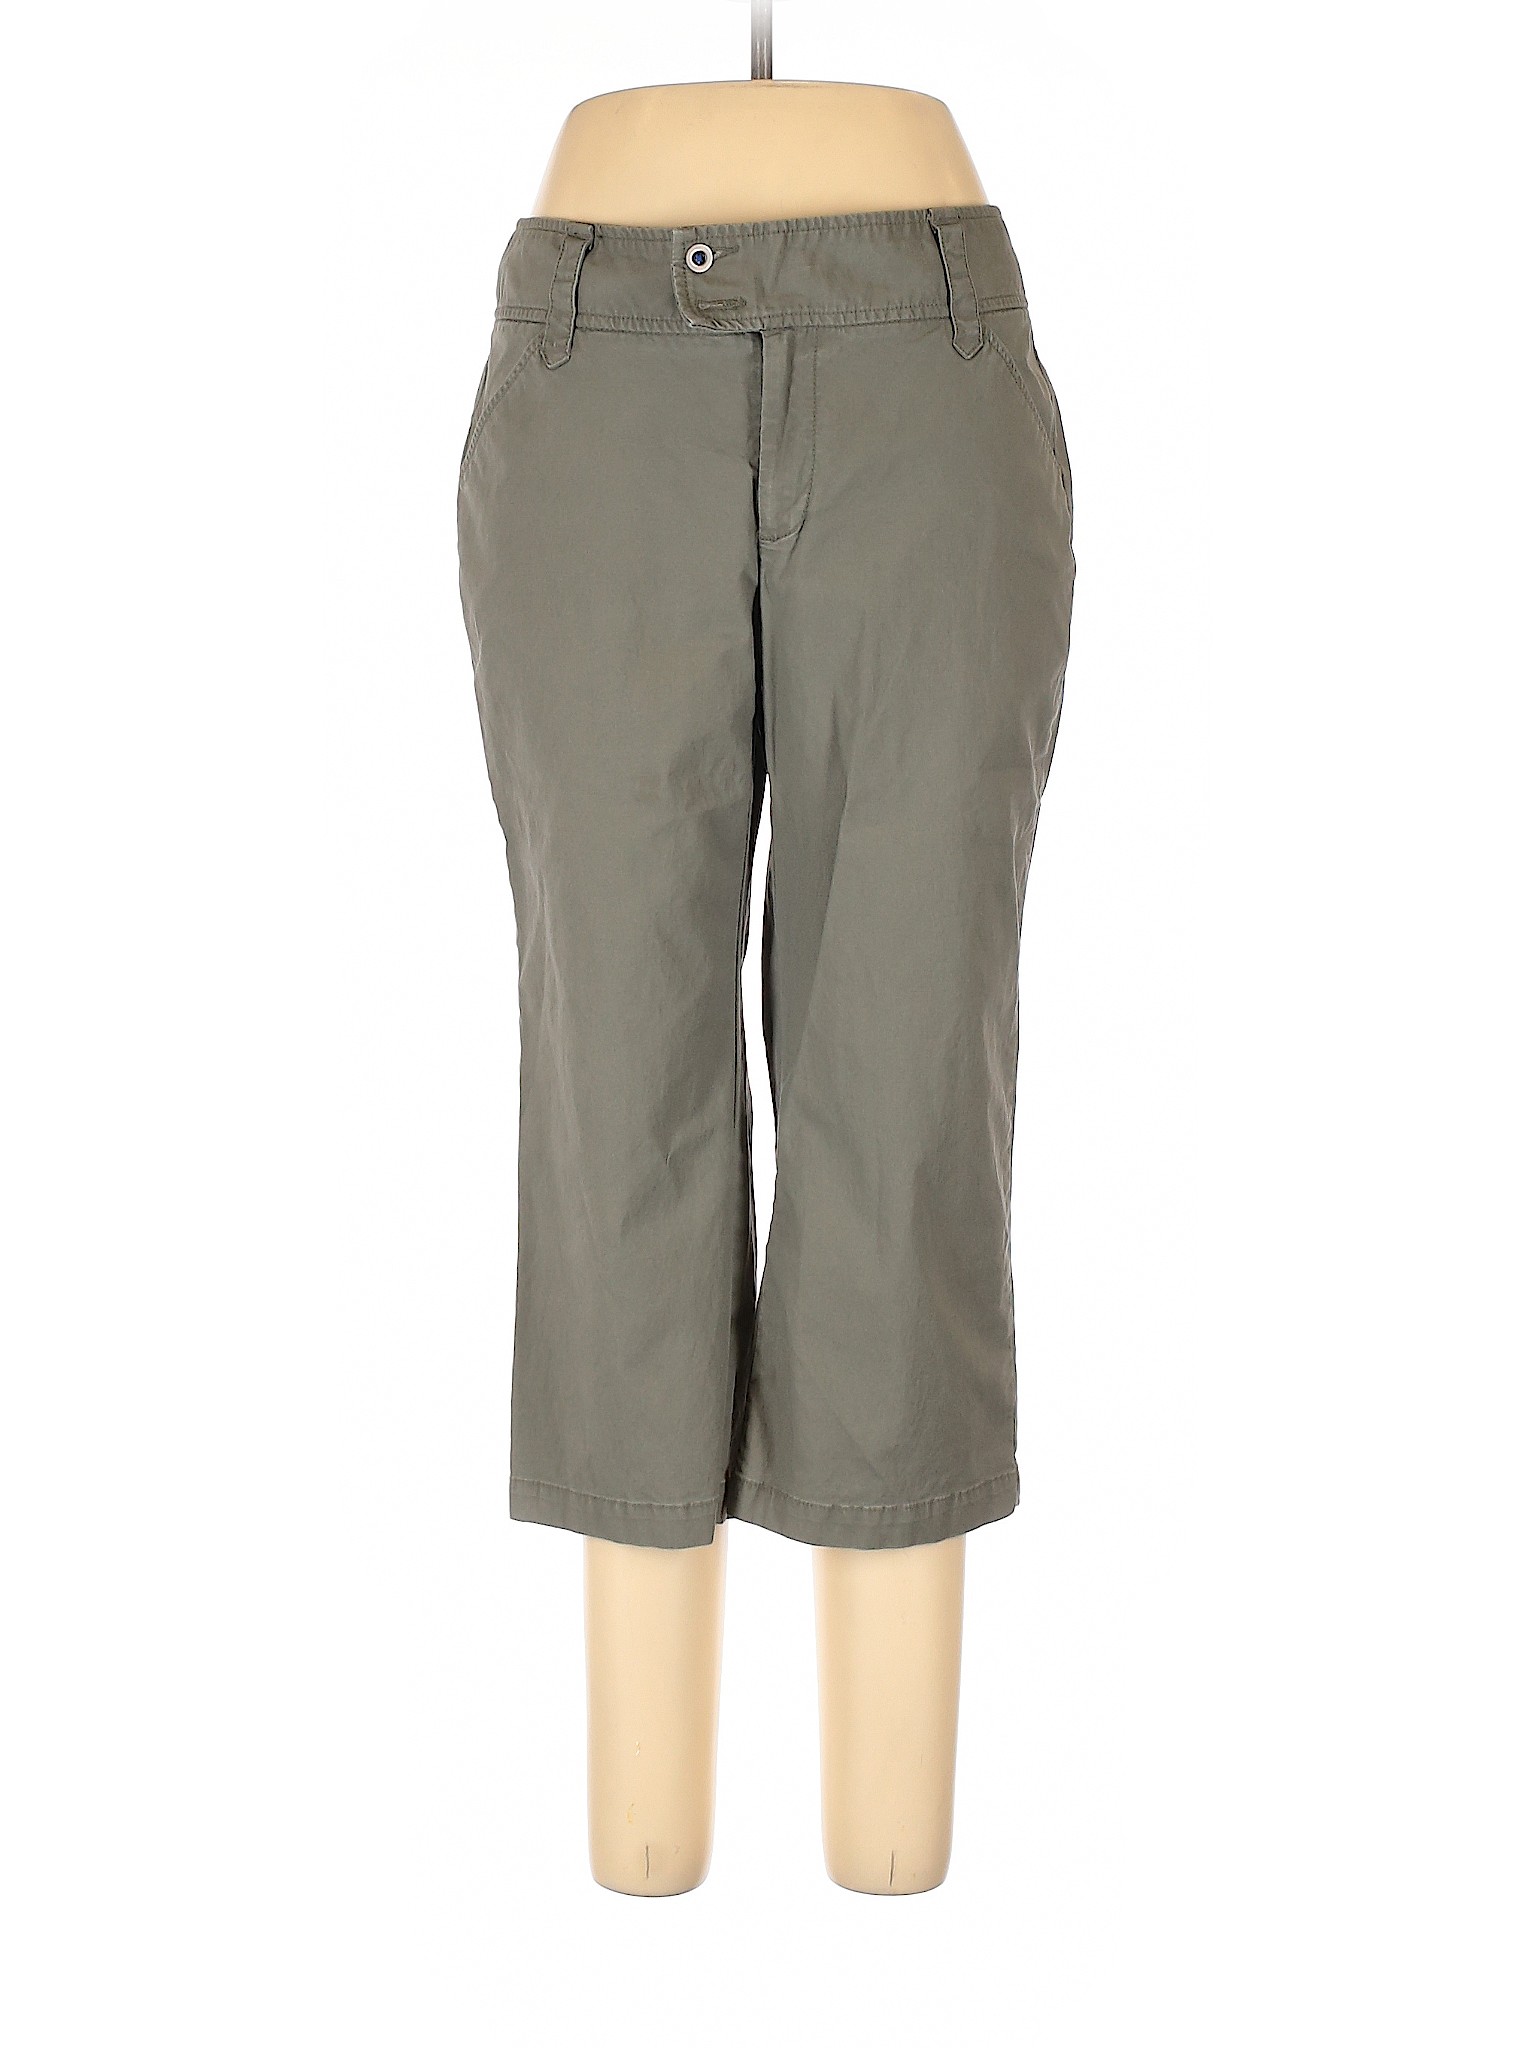 Dockers Women Gray Casual Pants 10 | eBay